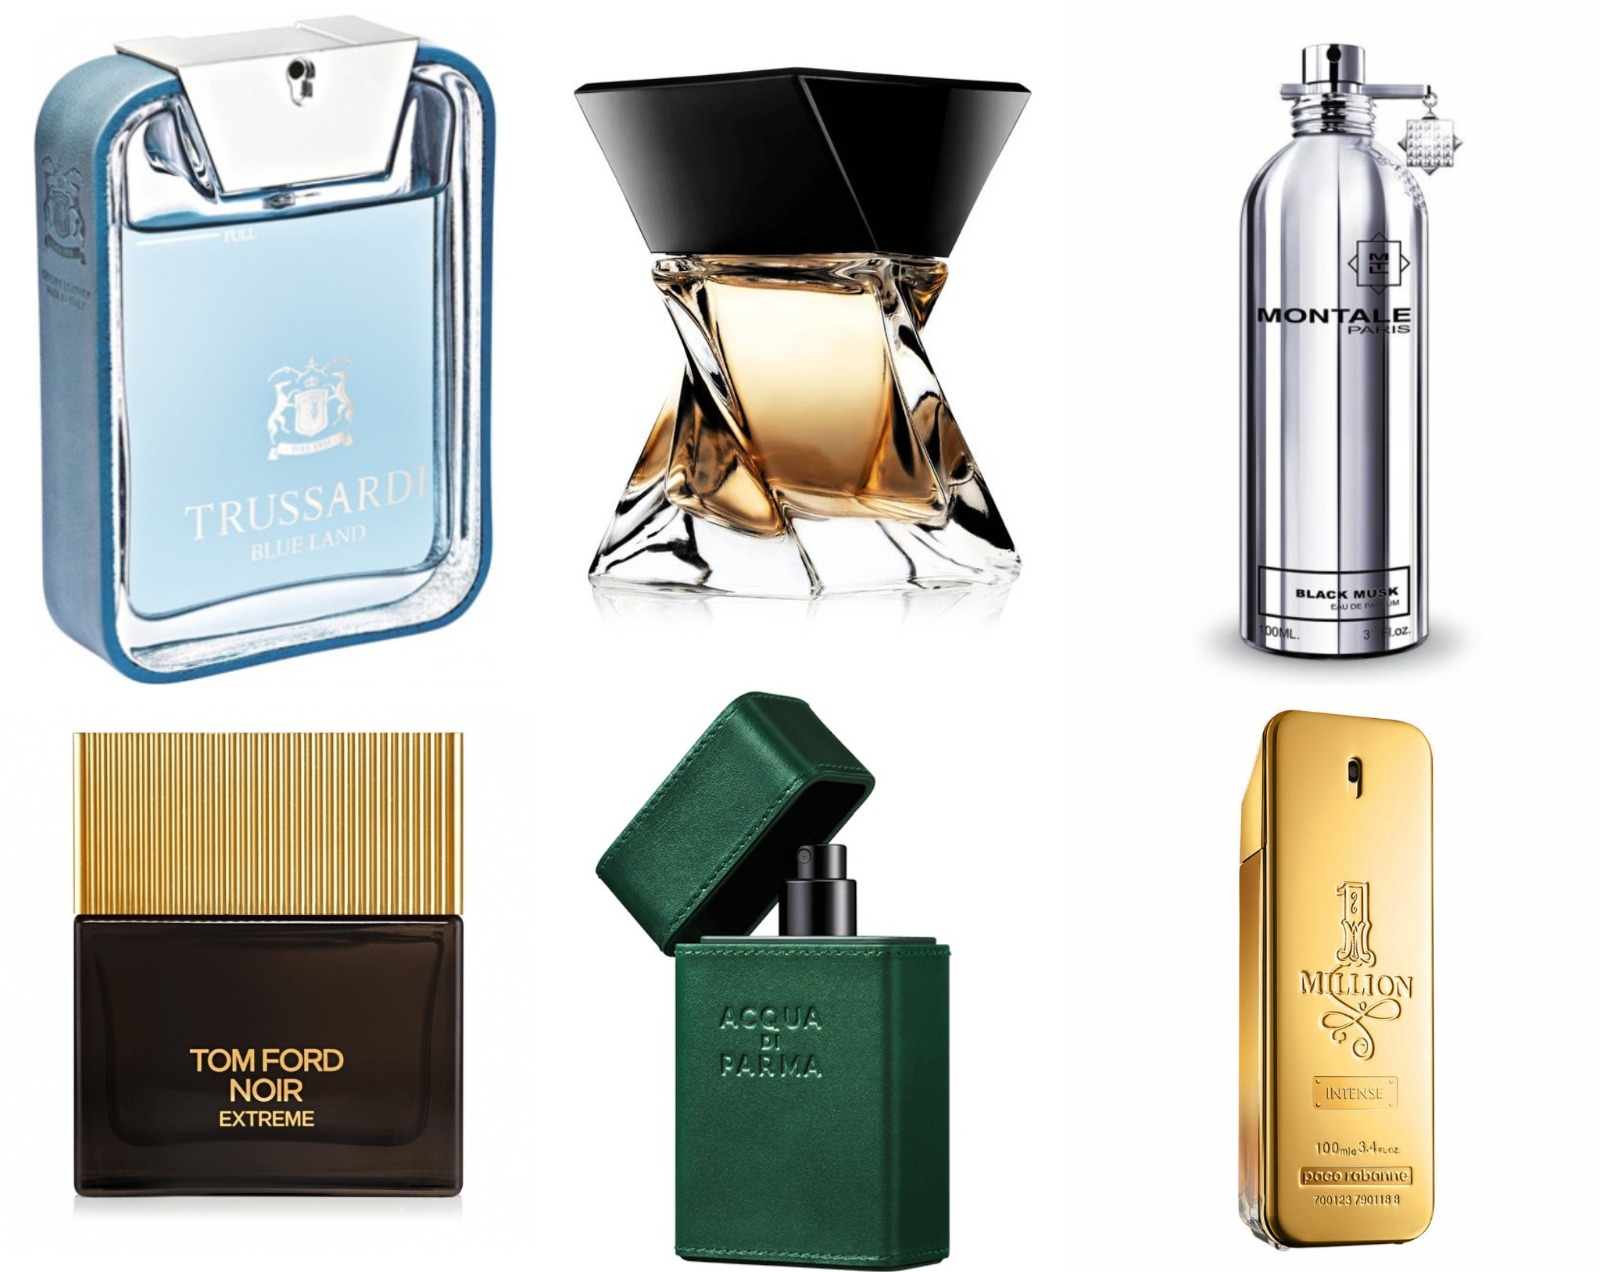 Brand-uri de lux ce au creat în timp parfumuri arăbești cu note orientale